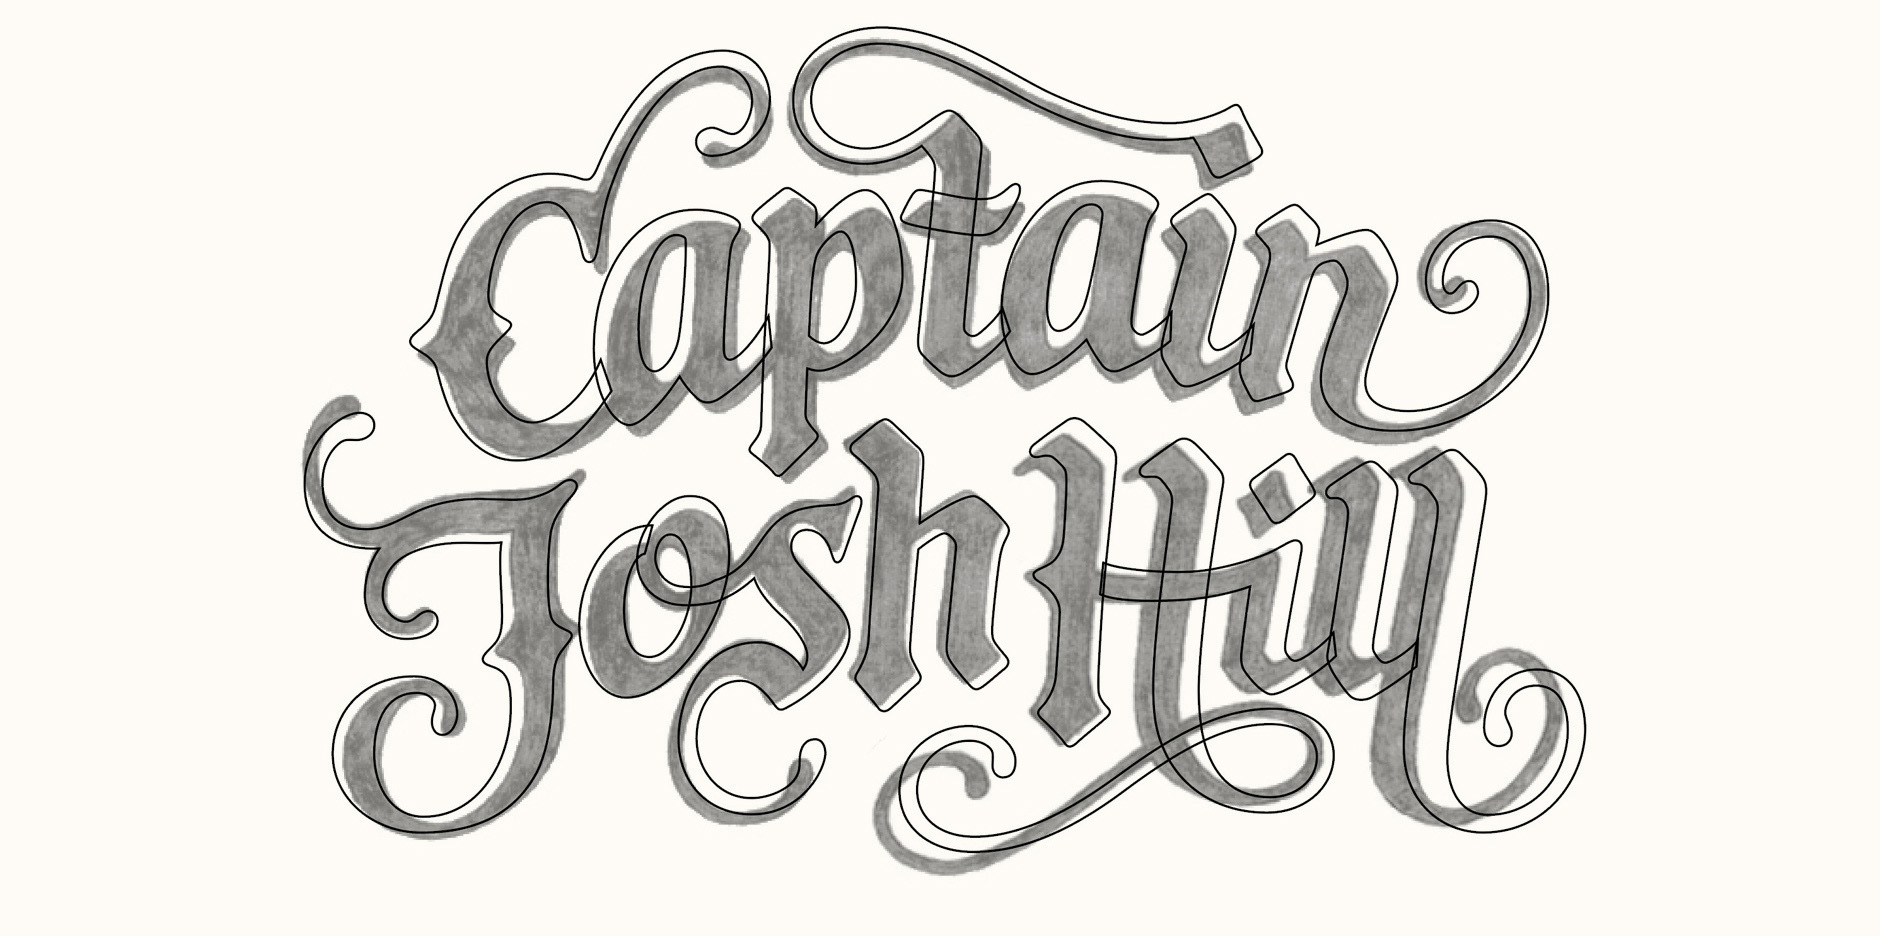 Claire Coullon // Captain Josh Hill